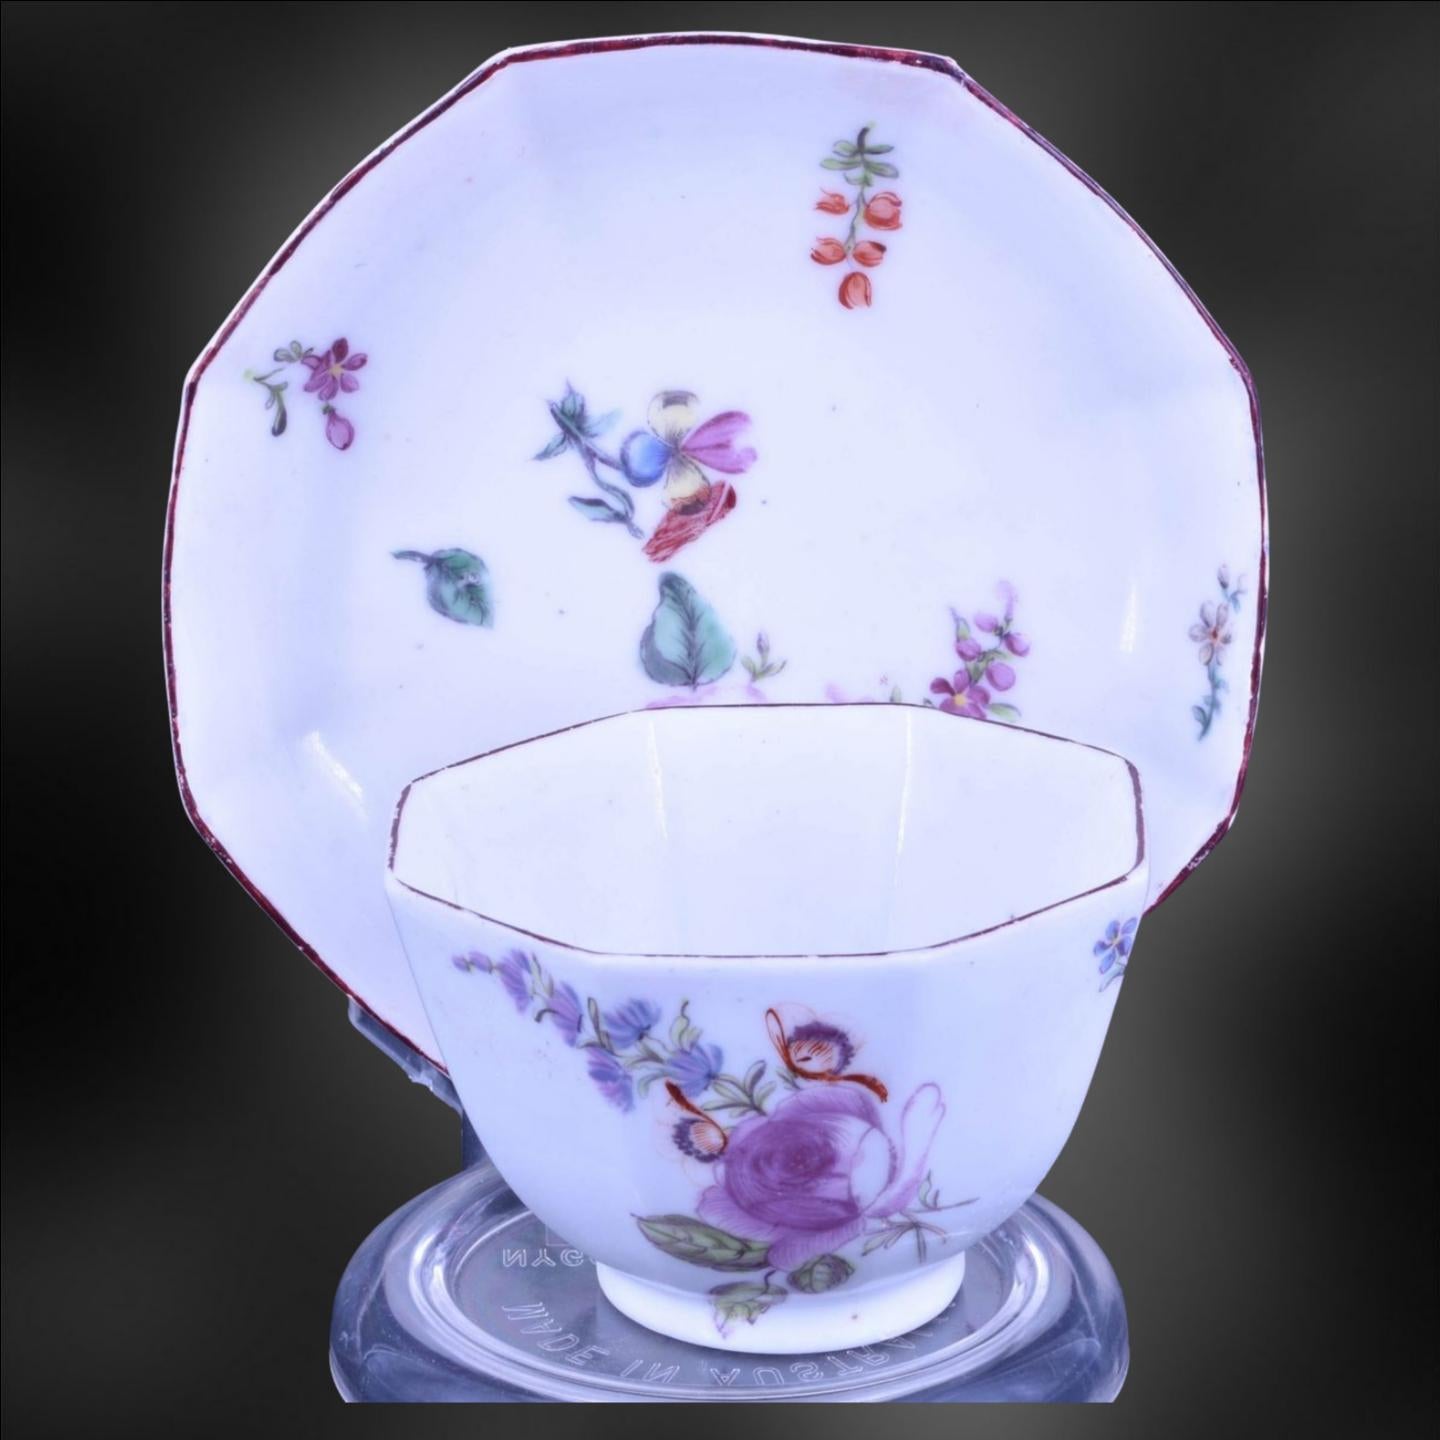 Un bol à thé octogonal et une soucoupe assortie, décorés des magnifiques peintures de fleurs habituelles de Chelsea. 

L'un des traits les plus distinctifs de la porcelaine de Chelsea est sa peinture florale complexe, qui présente souvent des